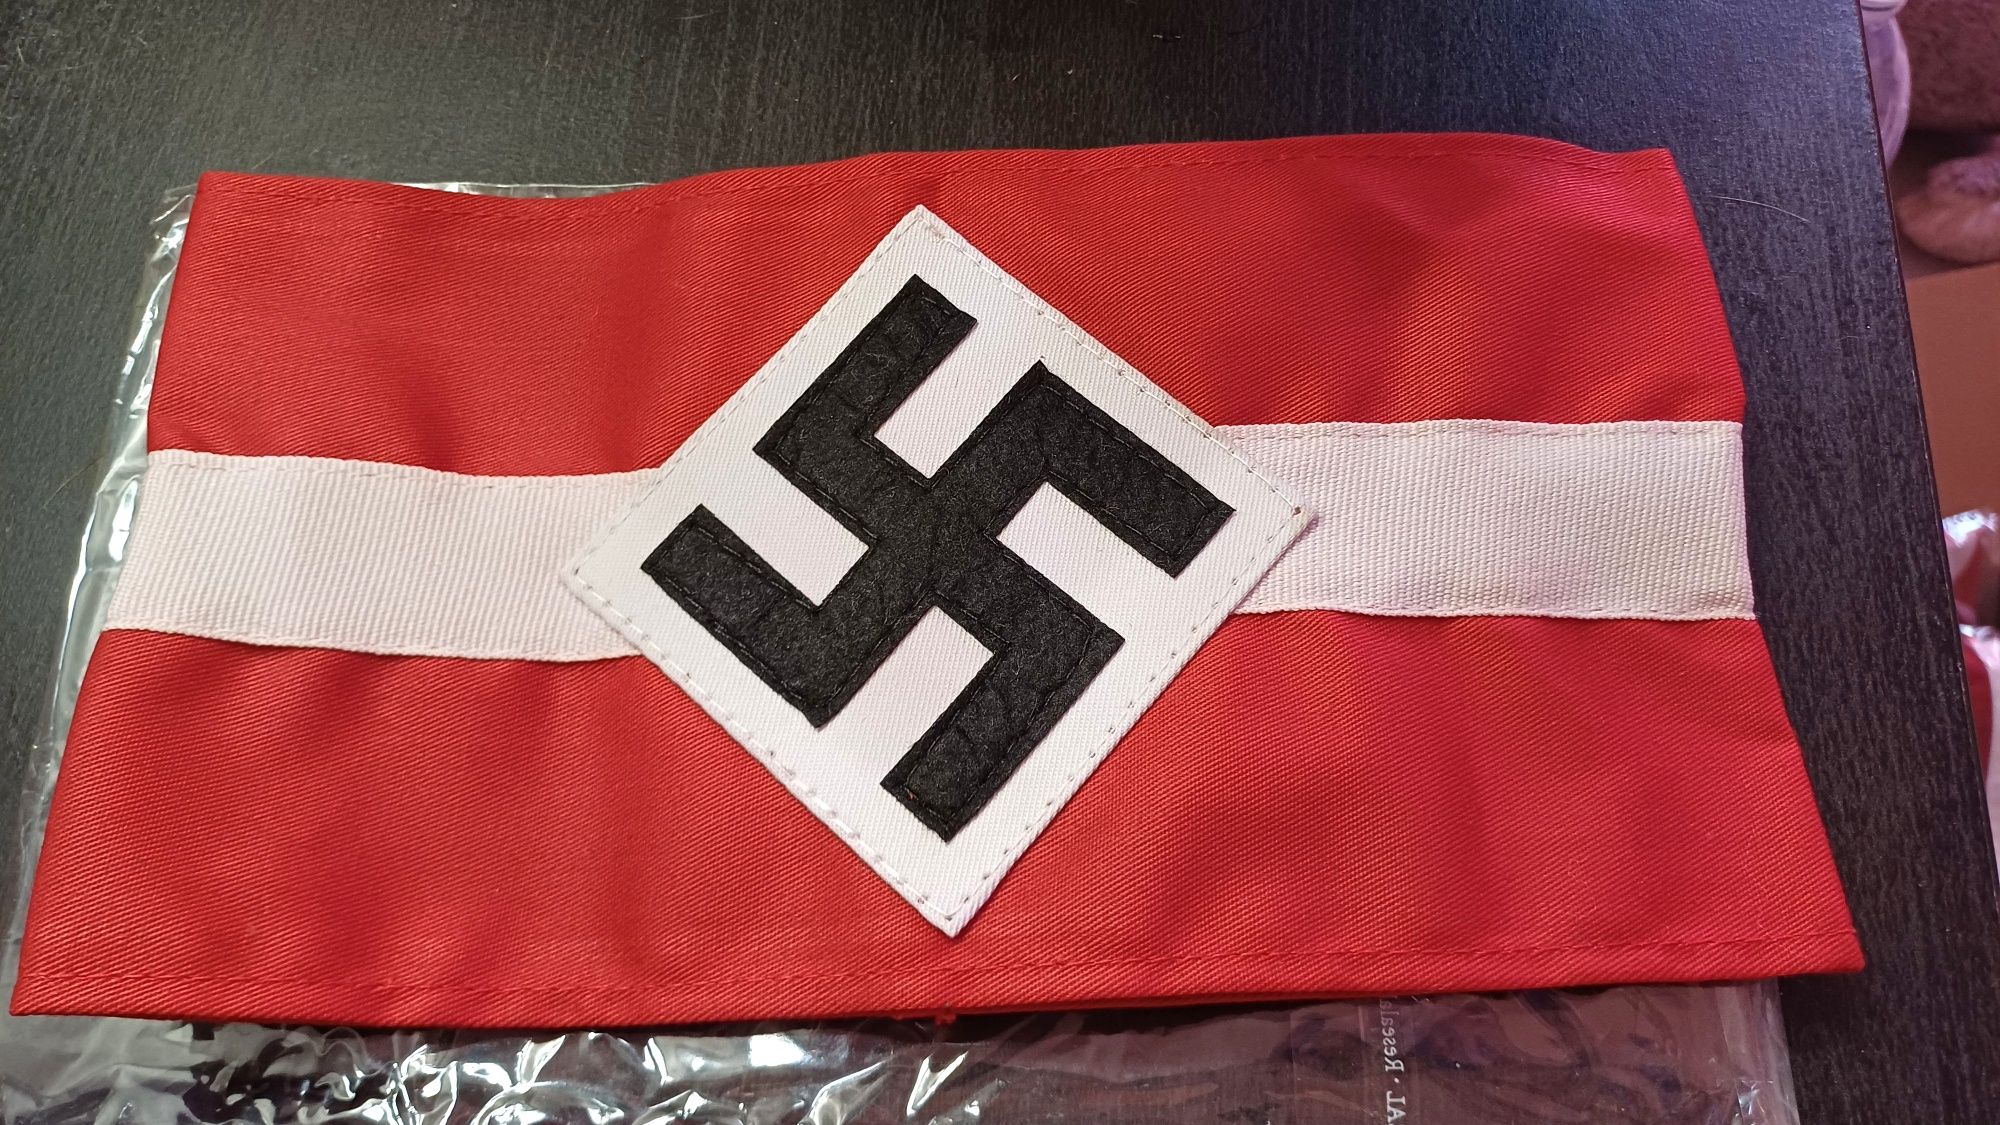 PROMOÇÃO--Armband Hitlerjugend Braçadeira Alemanha nazi-suástica NOVA